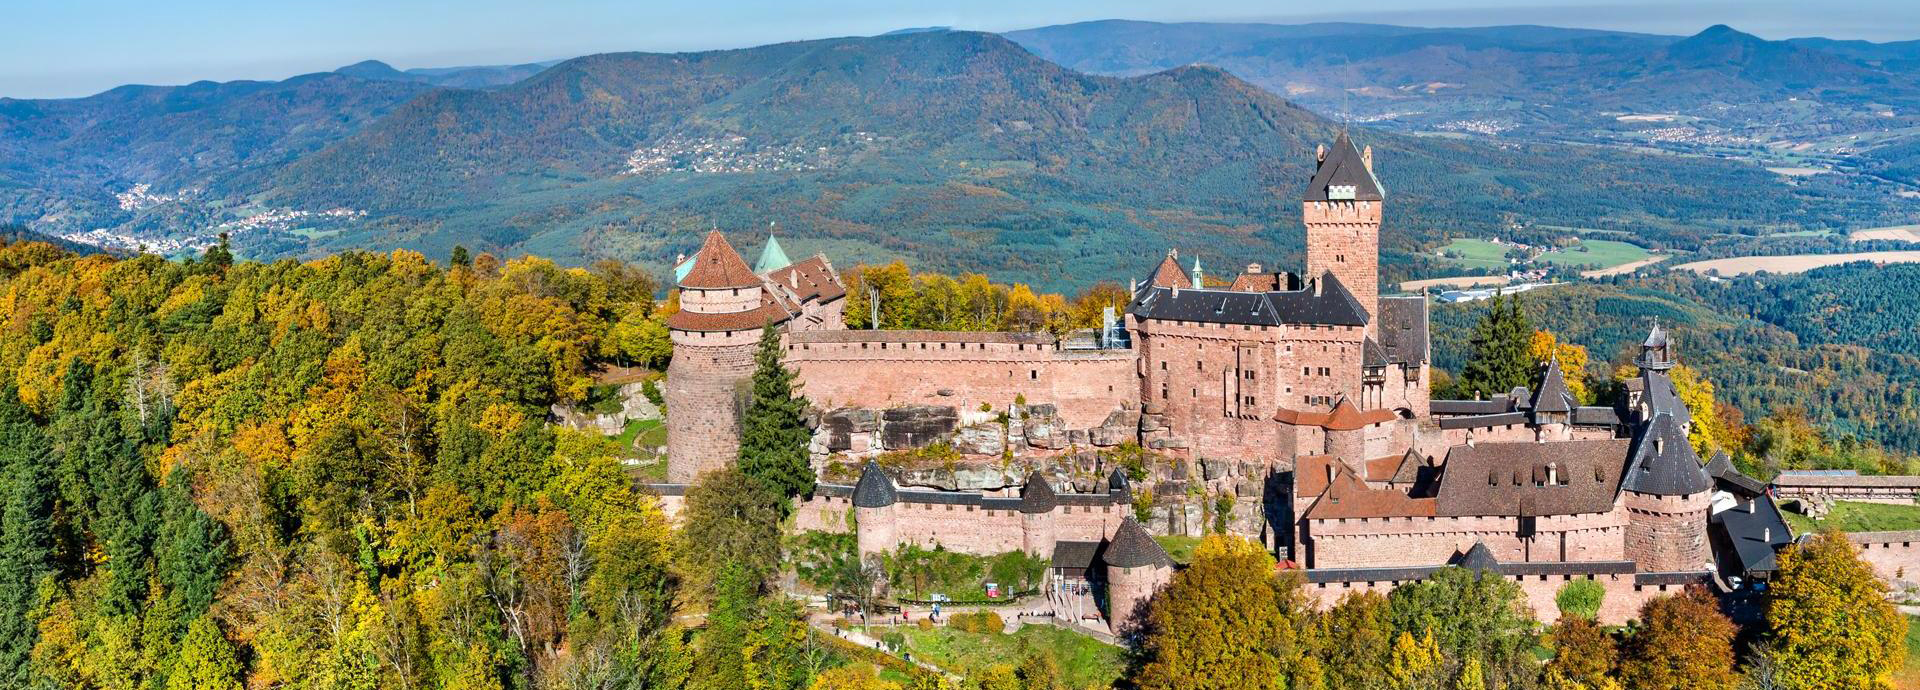 Château du Haut-Koenigsbourg est une visite incontournable lors d'un séjour en Alsace.